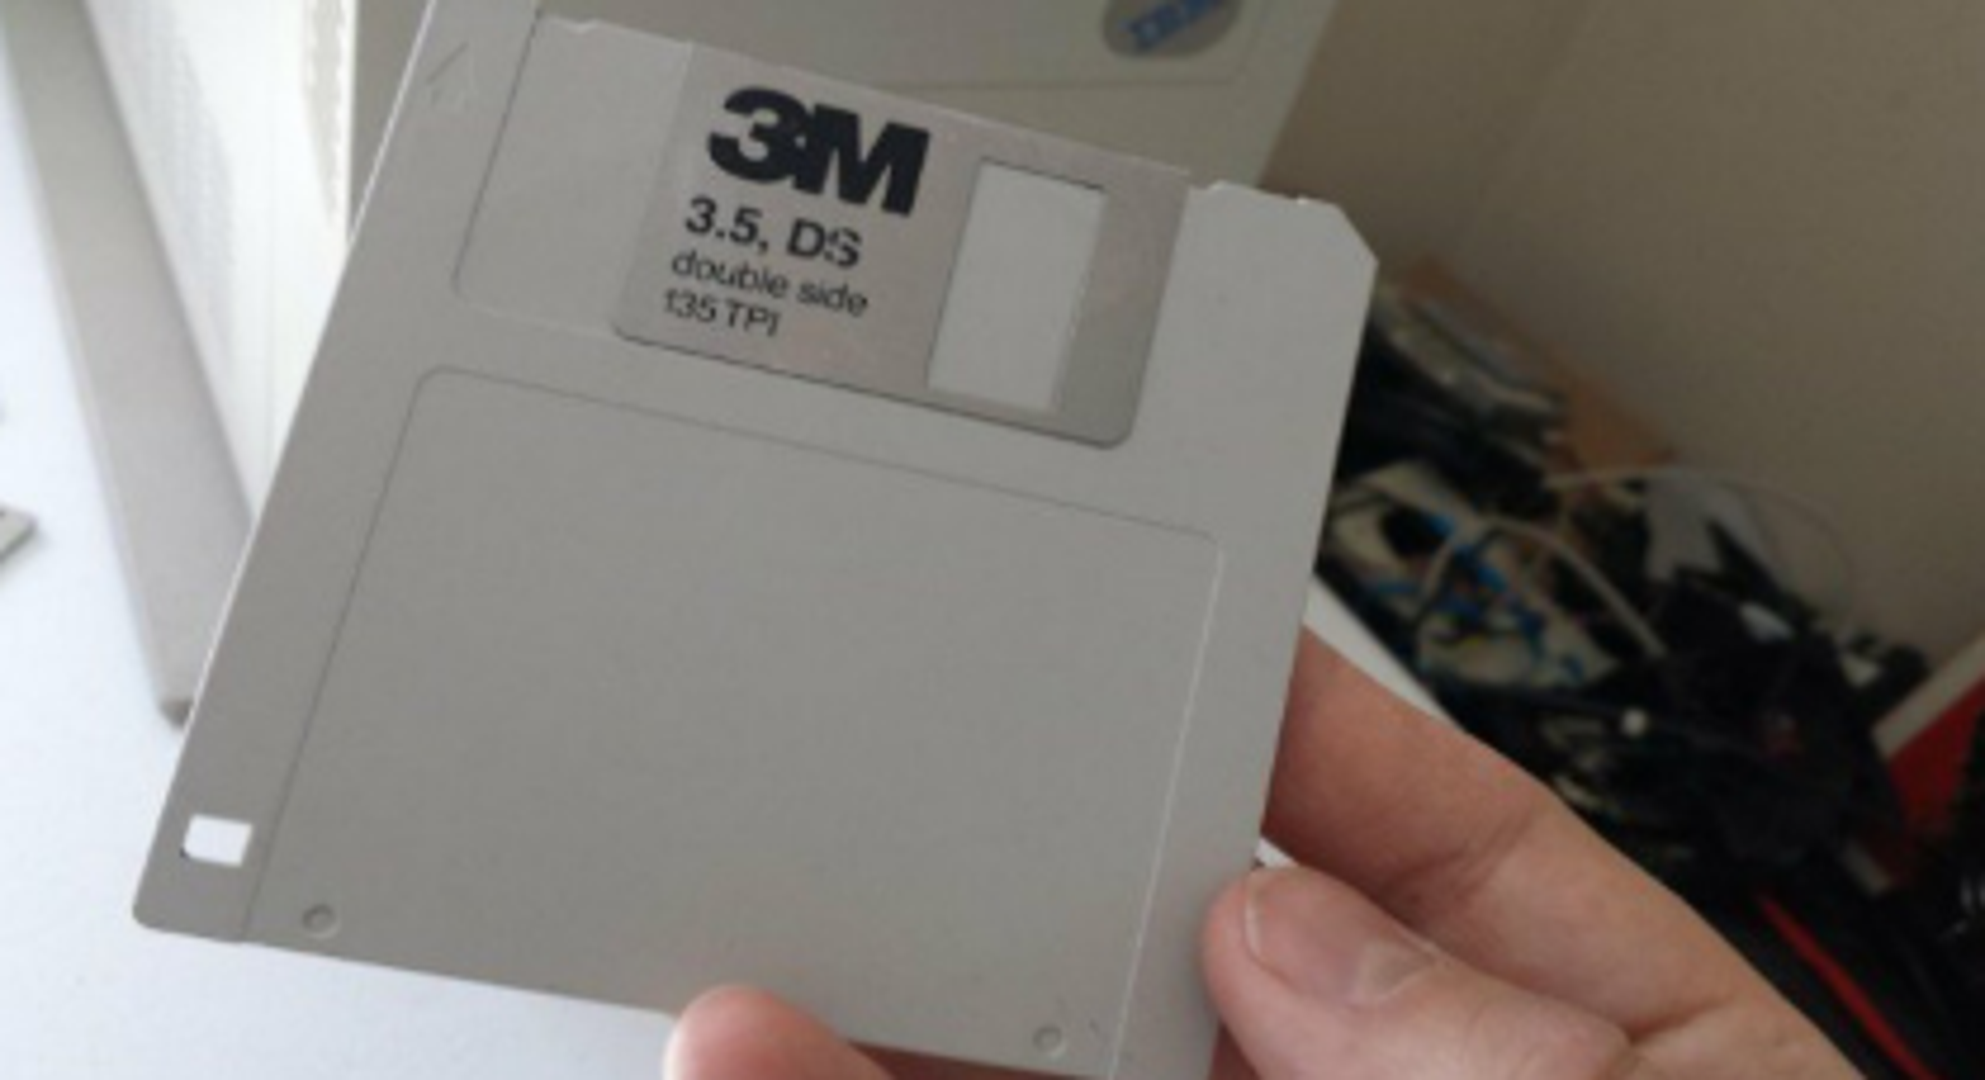 Jedan korisnik Twittera objavio je fotografiju memory diska i napisao kako ga je dijete pitalo je li to isprintao 'save' ikonicu s kompjutora u 3D printeru.